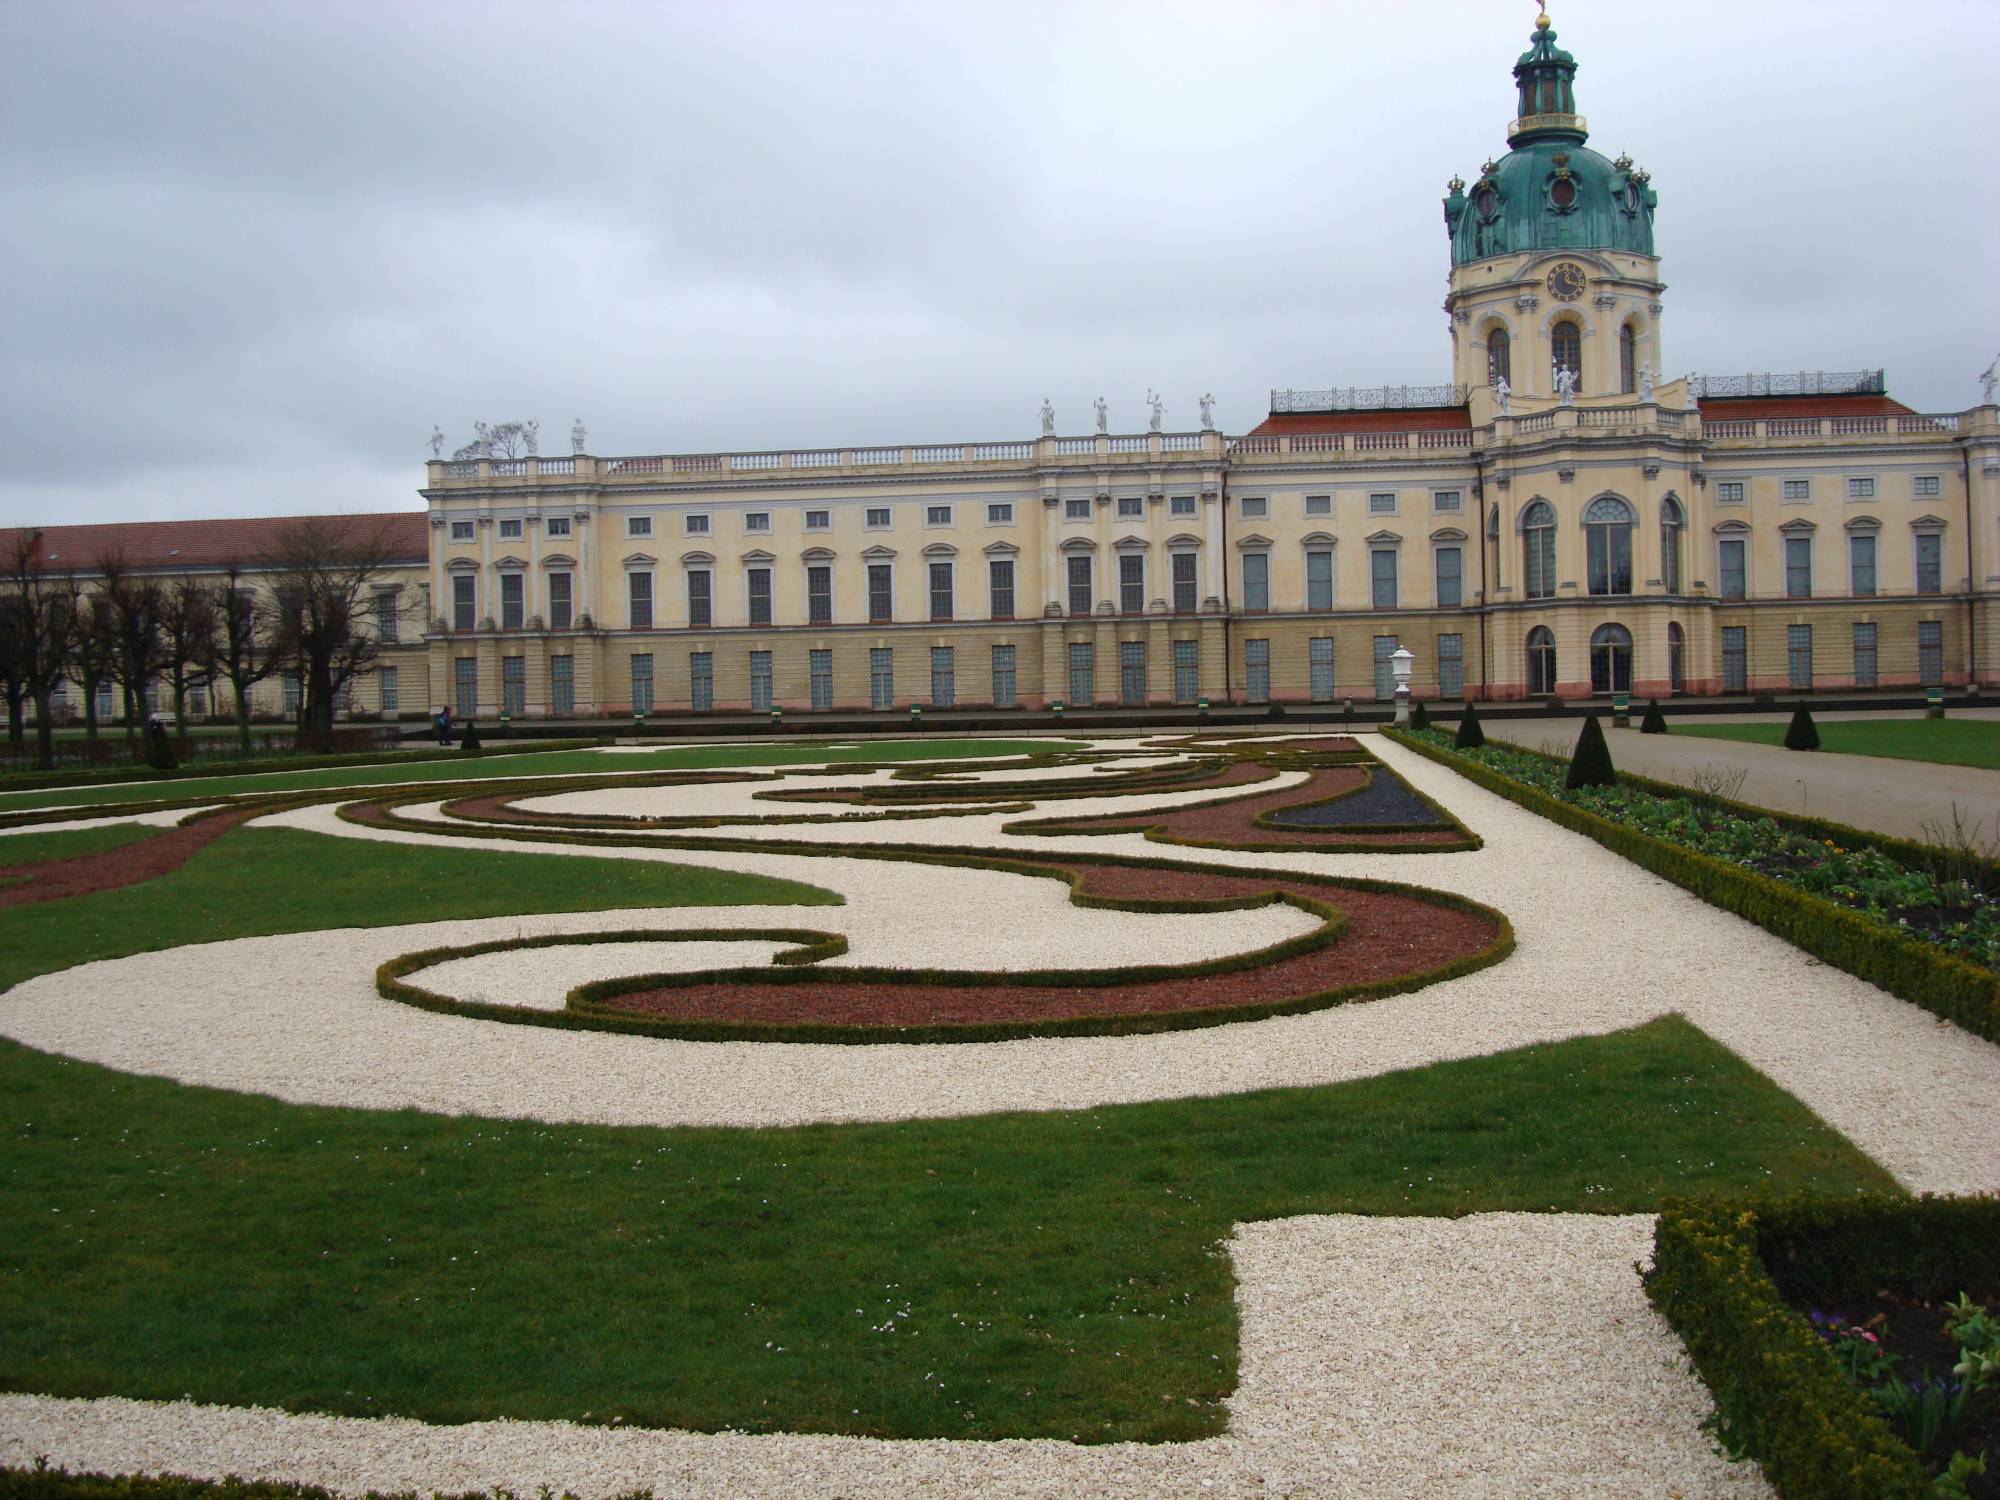 Berlin - Charlottenburg Palace